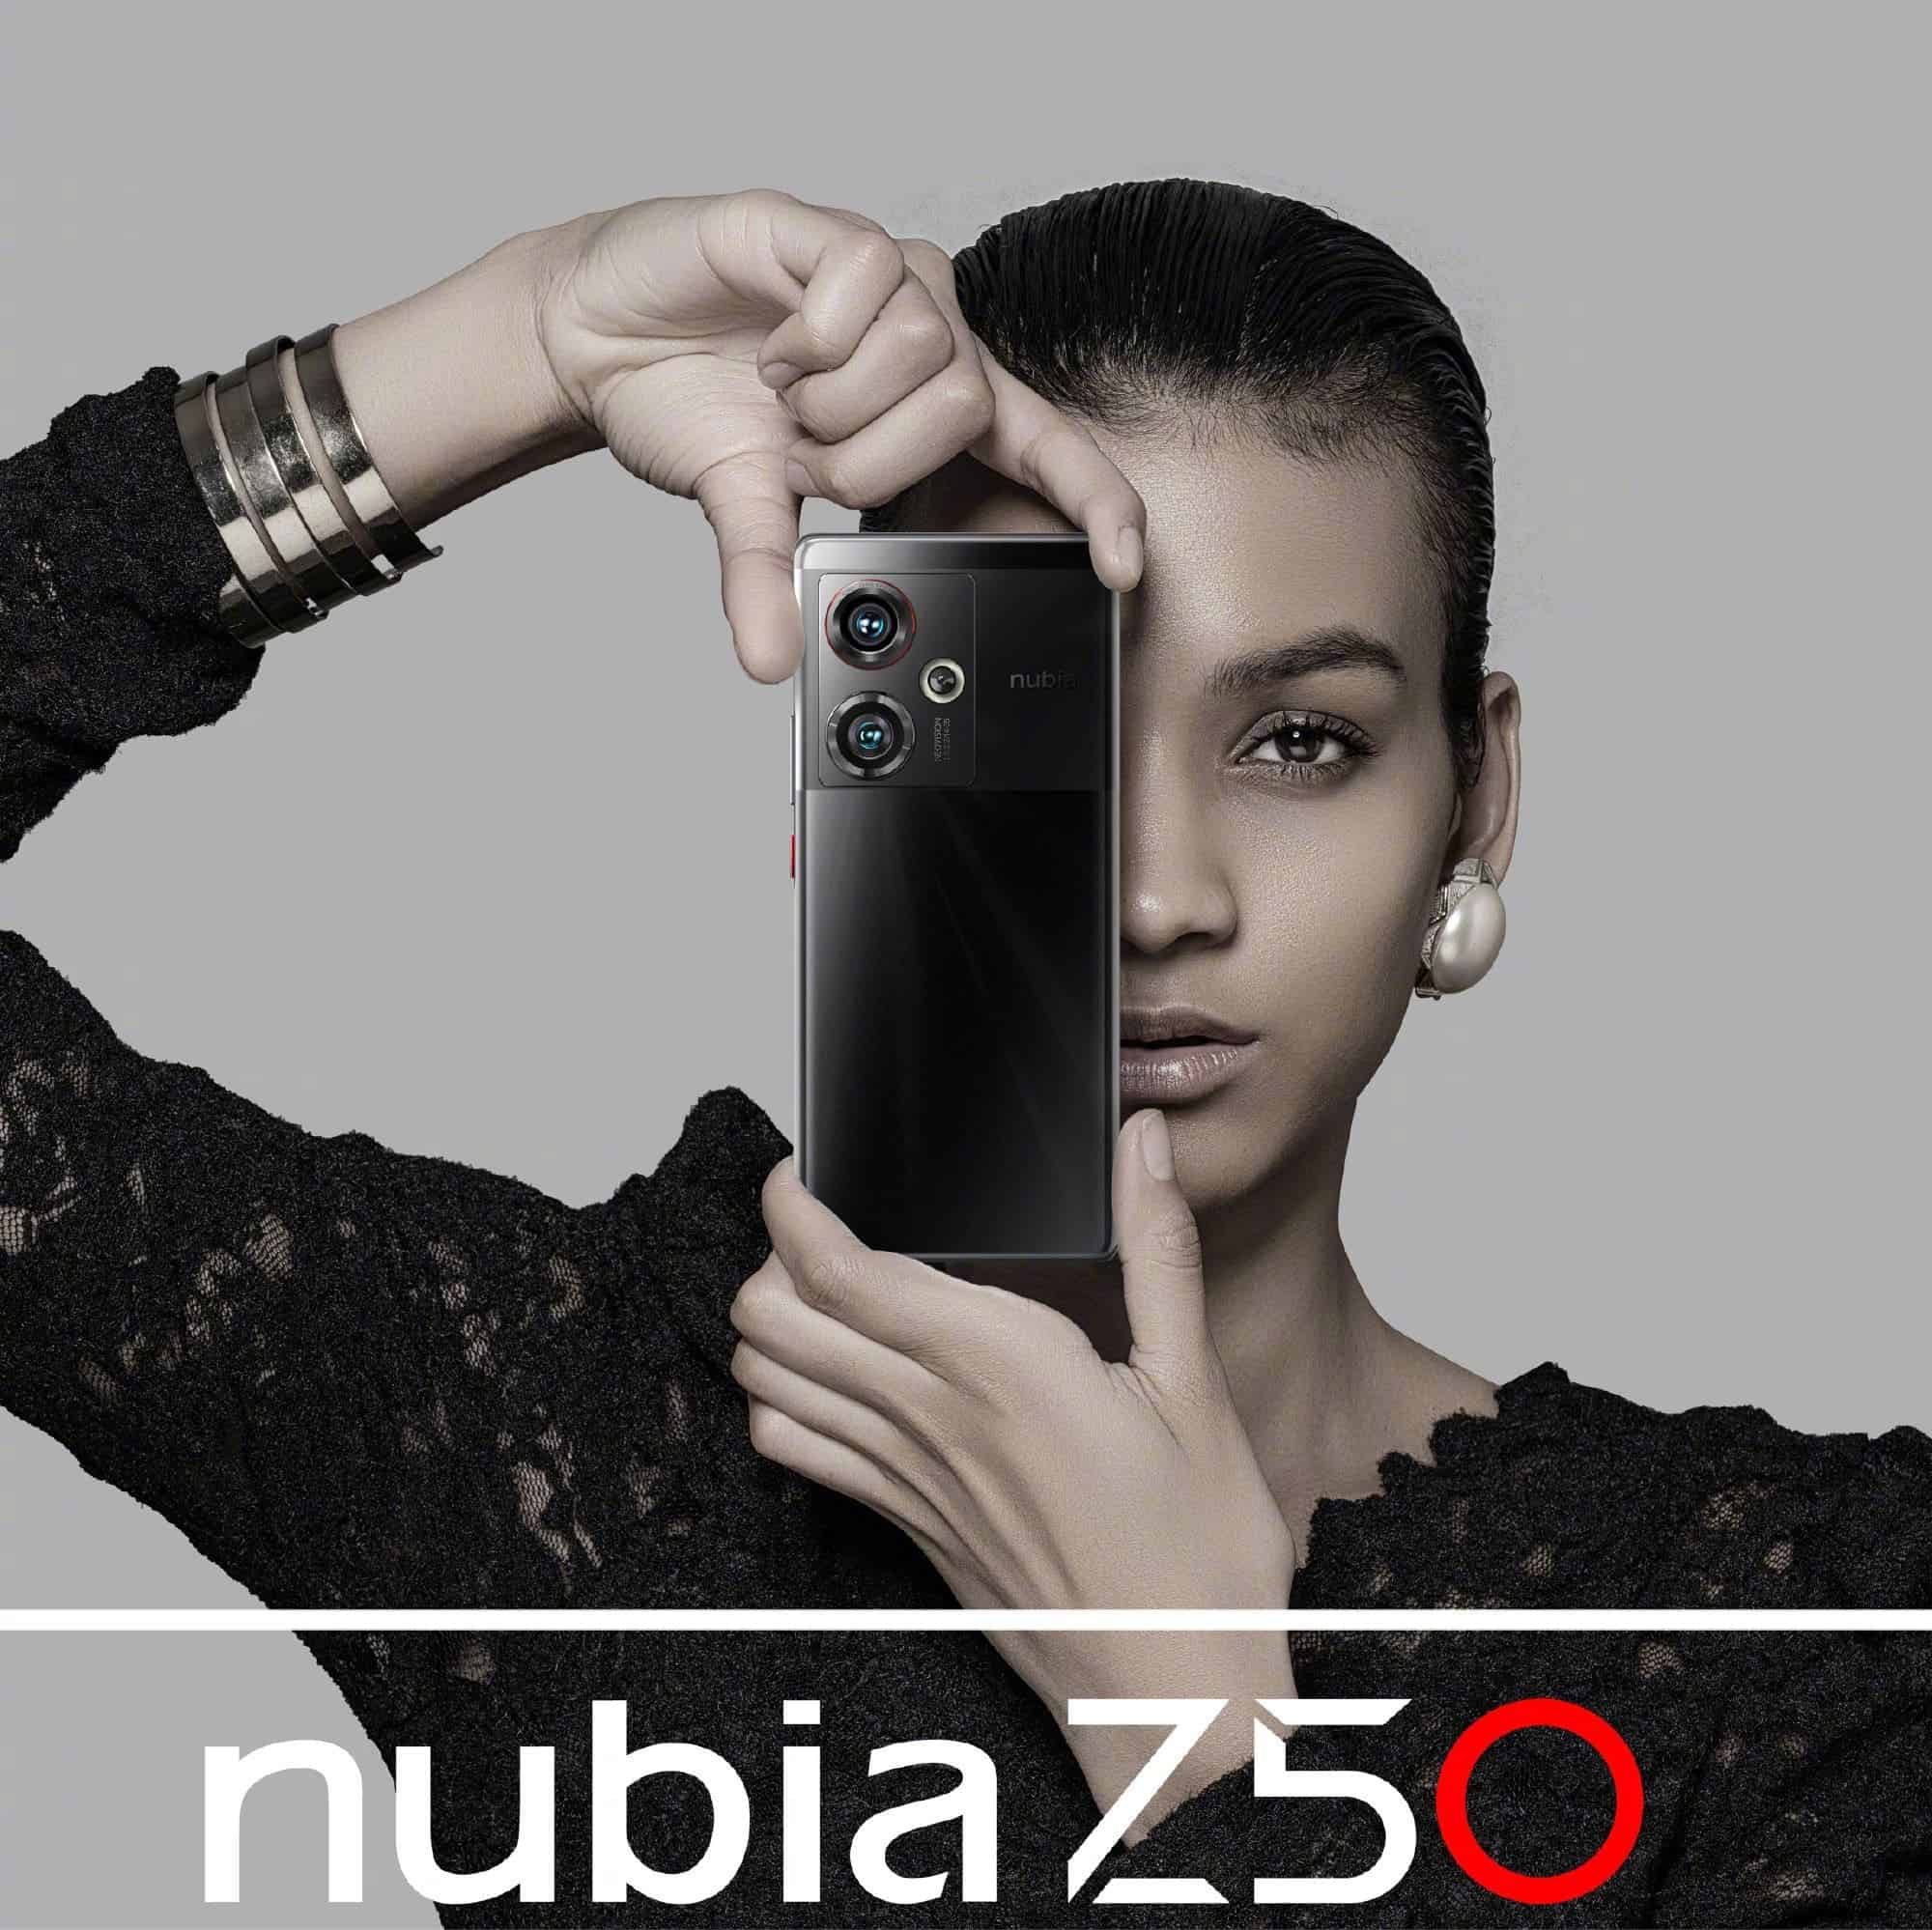 Nubia Z50